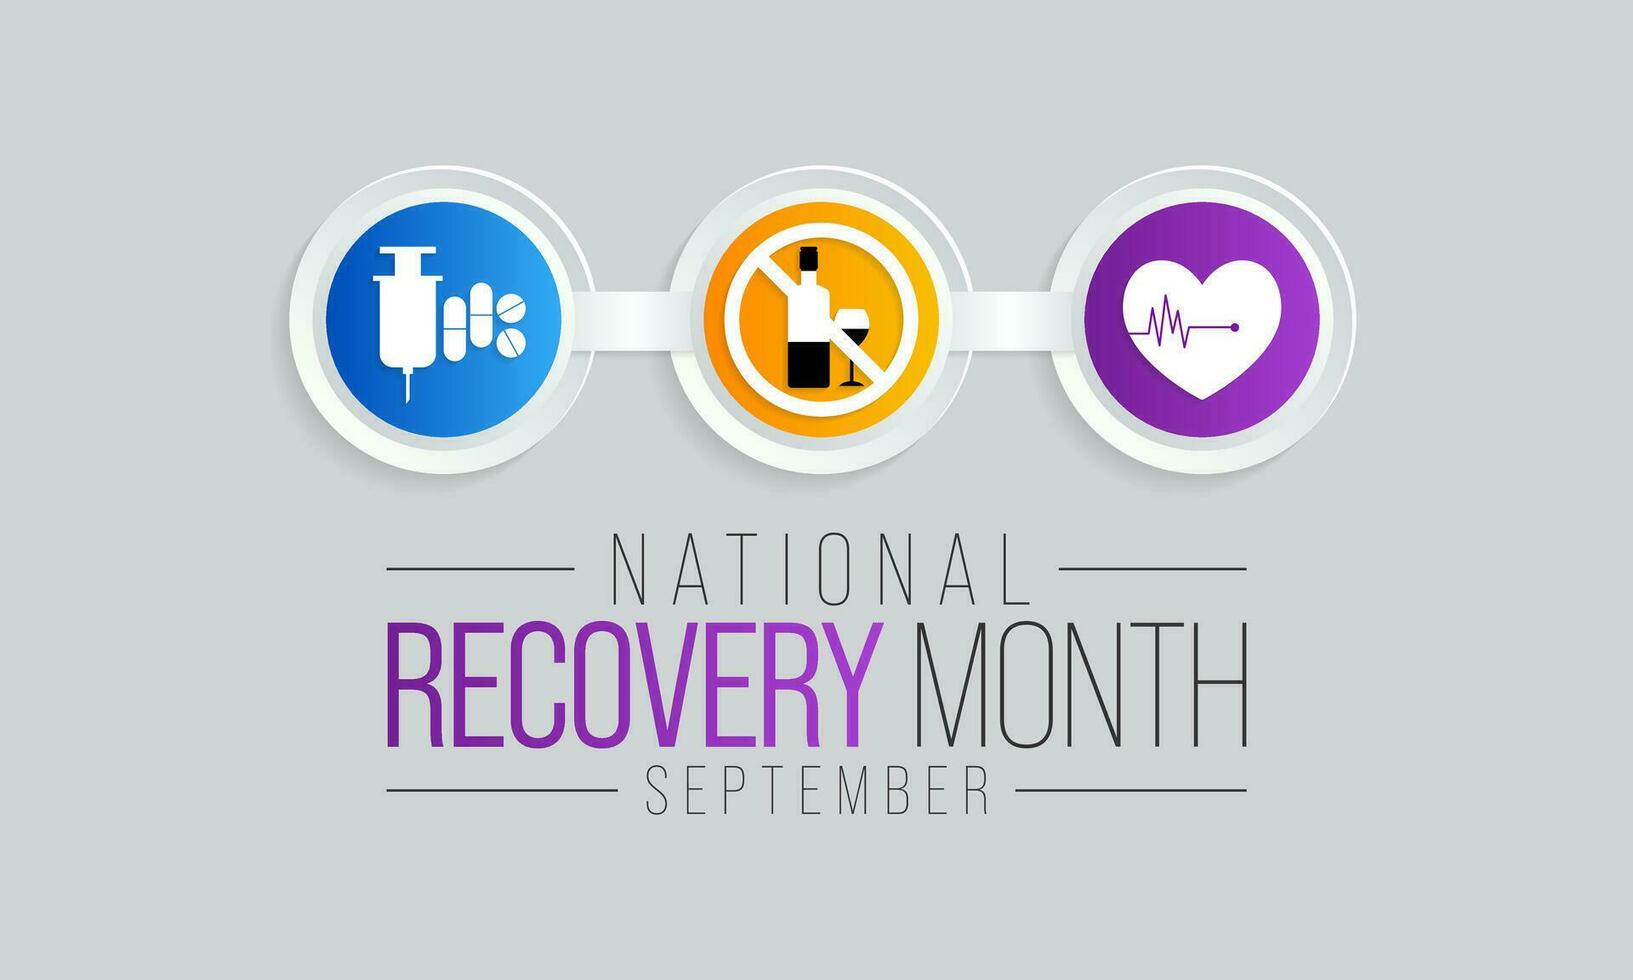 recuperação mês é observado cada ano durante setembro para educar a público sobre substância Abuso tratamentos e mental saúde Serviços. vetor ilustração